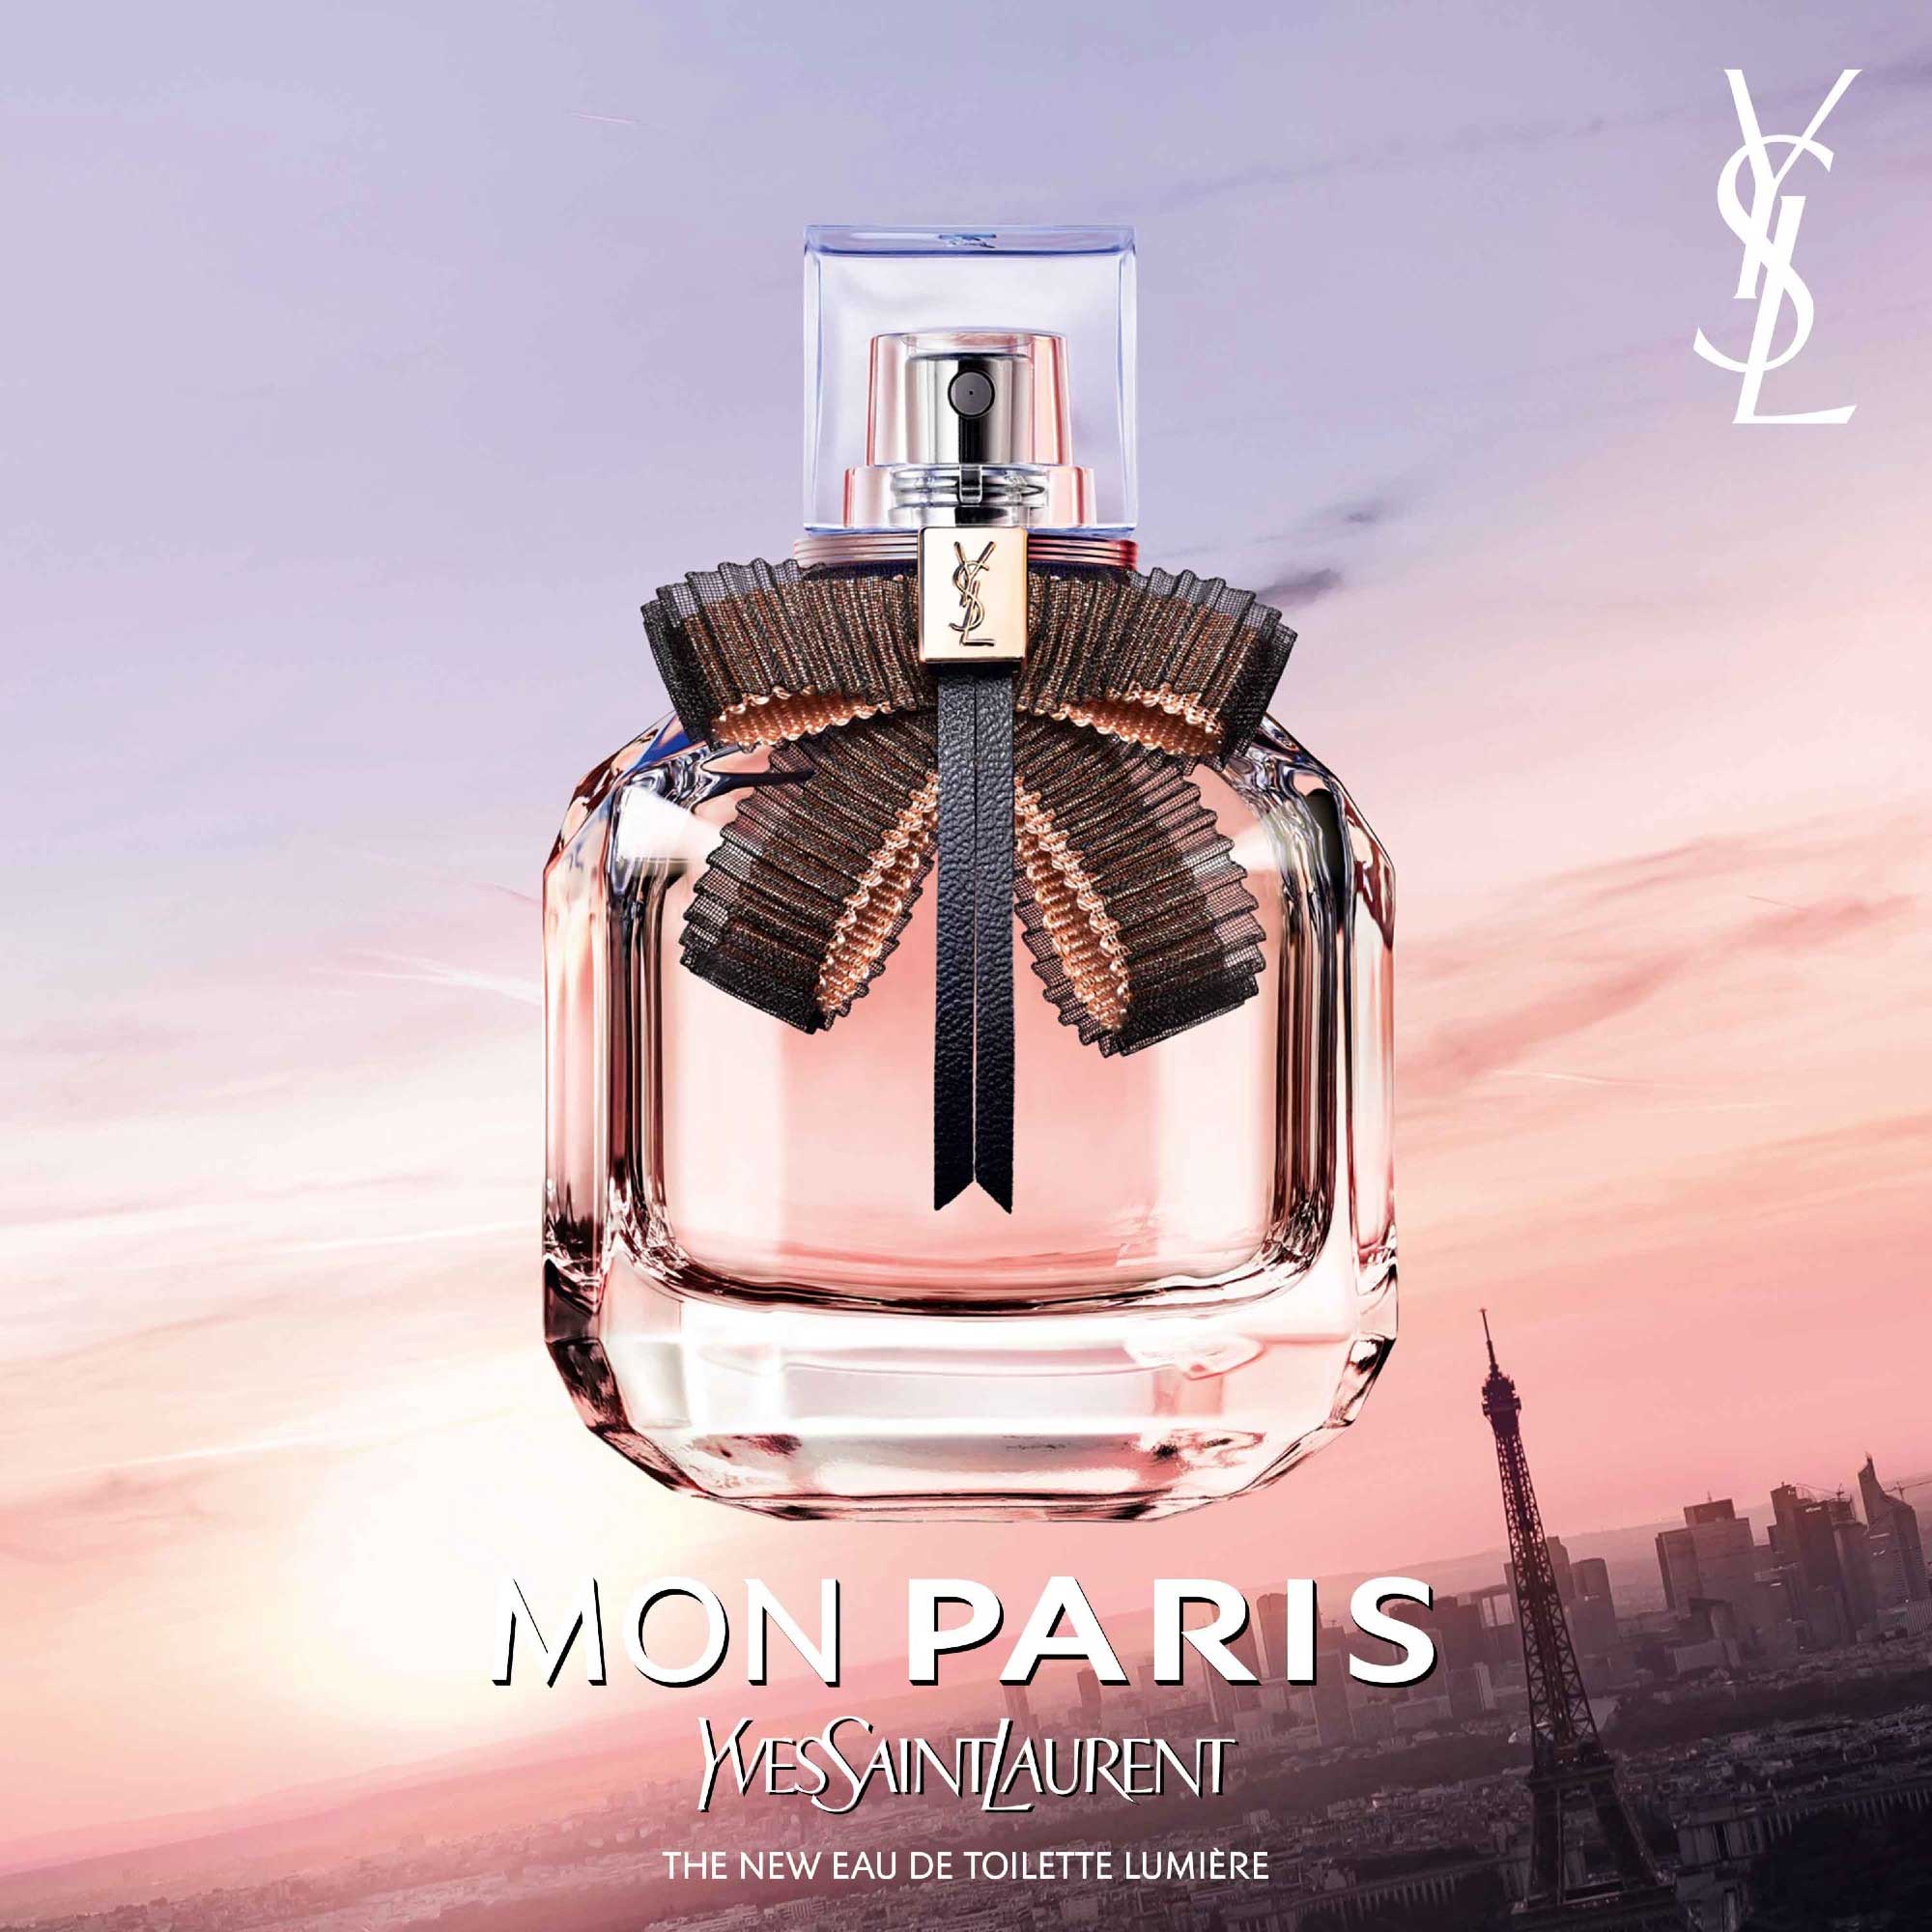 Yves Saint Laurent Mon Paris Lumiere aquatic floral perfume guide to scents